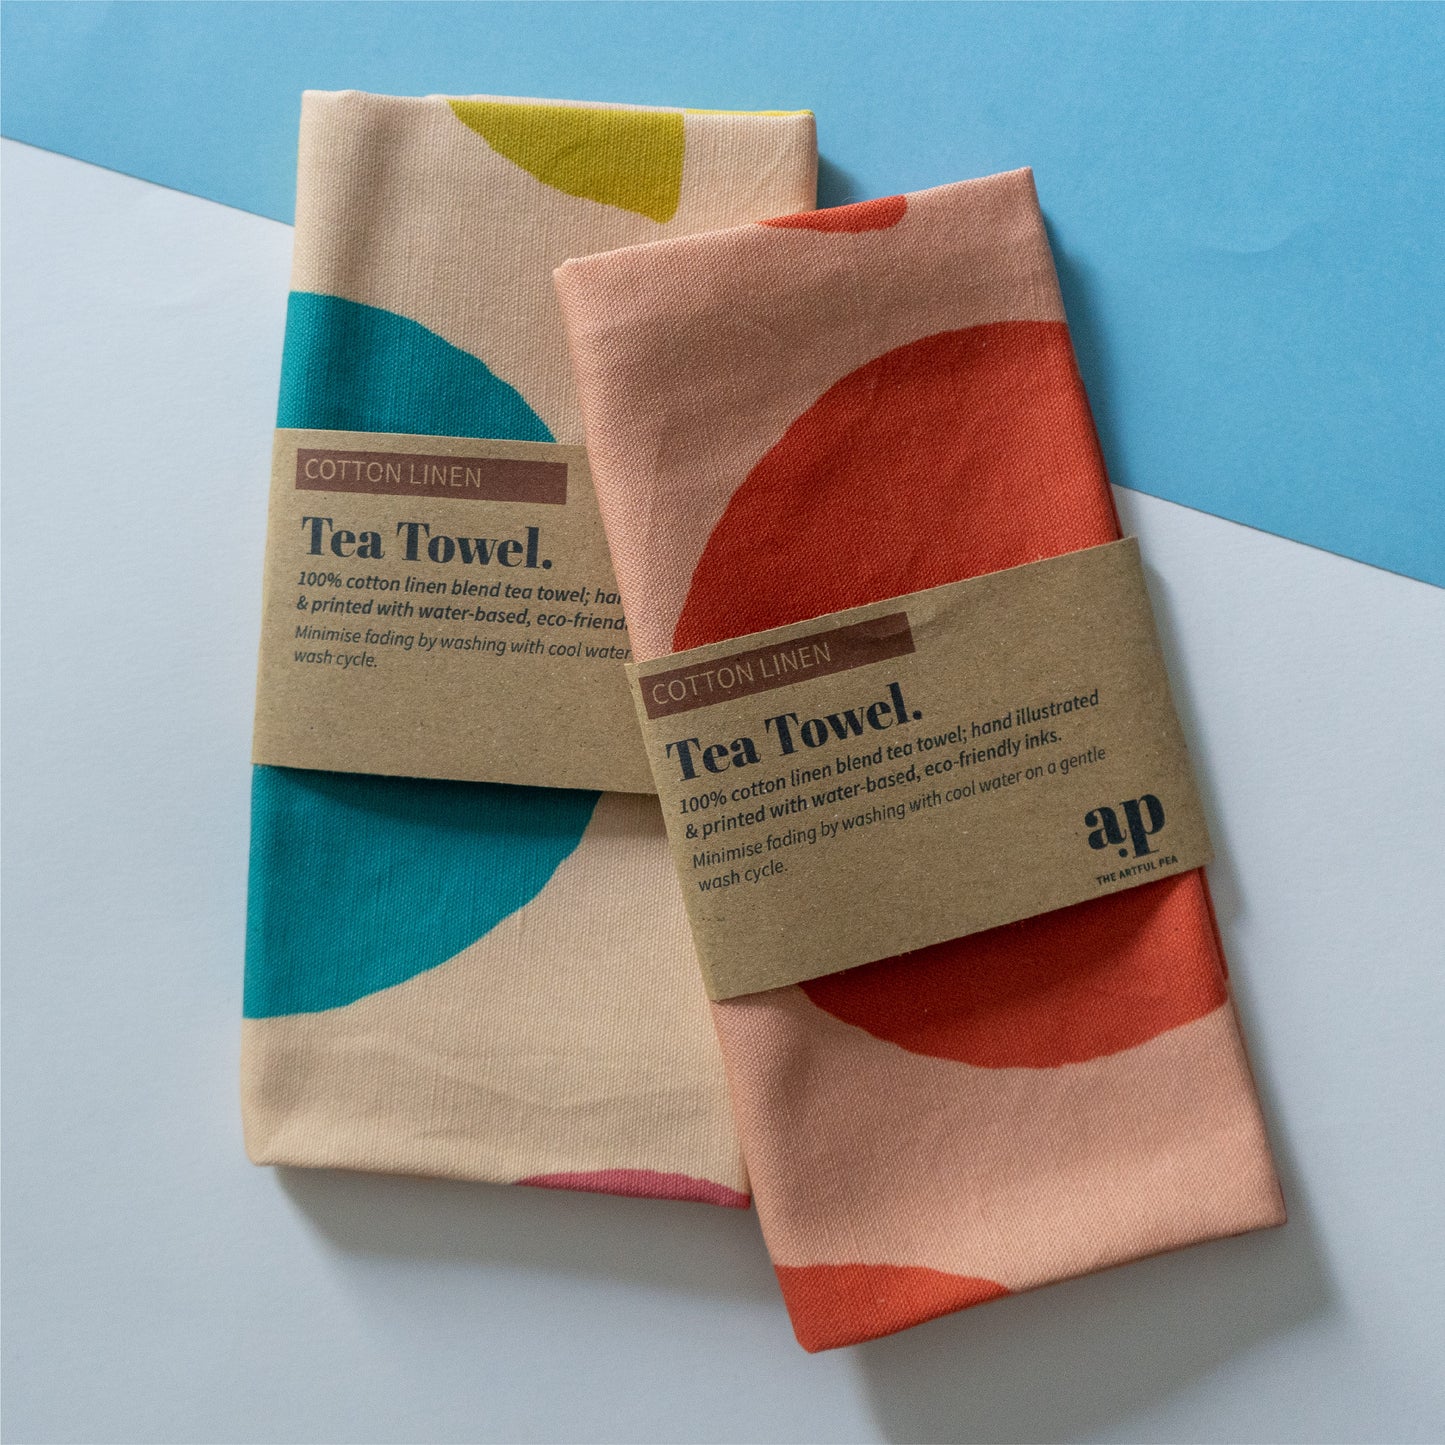 Cotton Linen Tea Towel in Terracotta